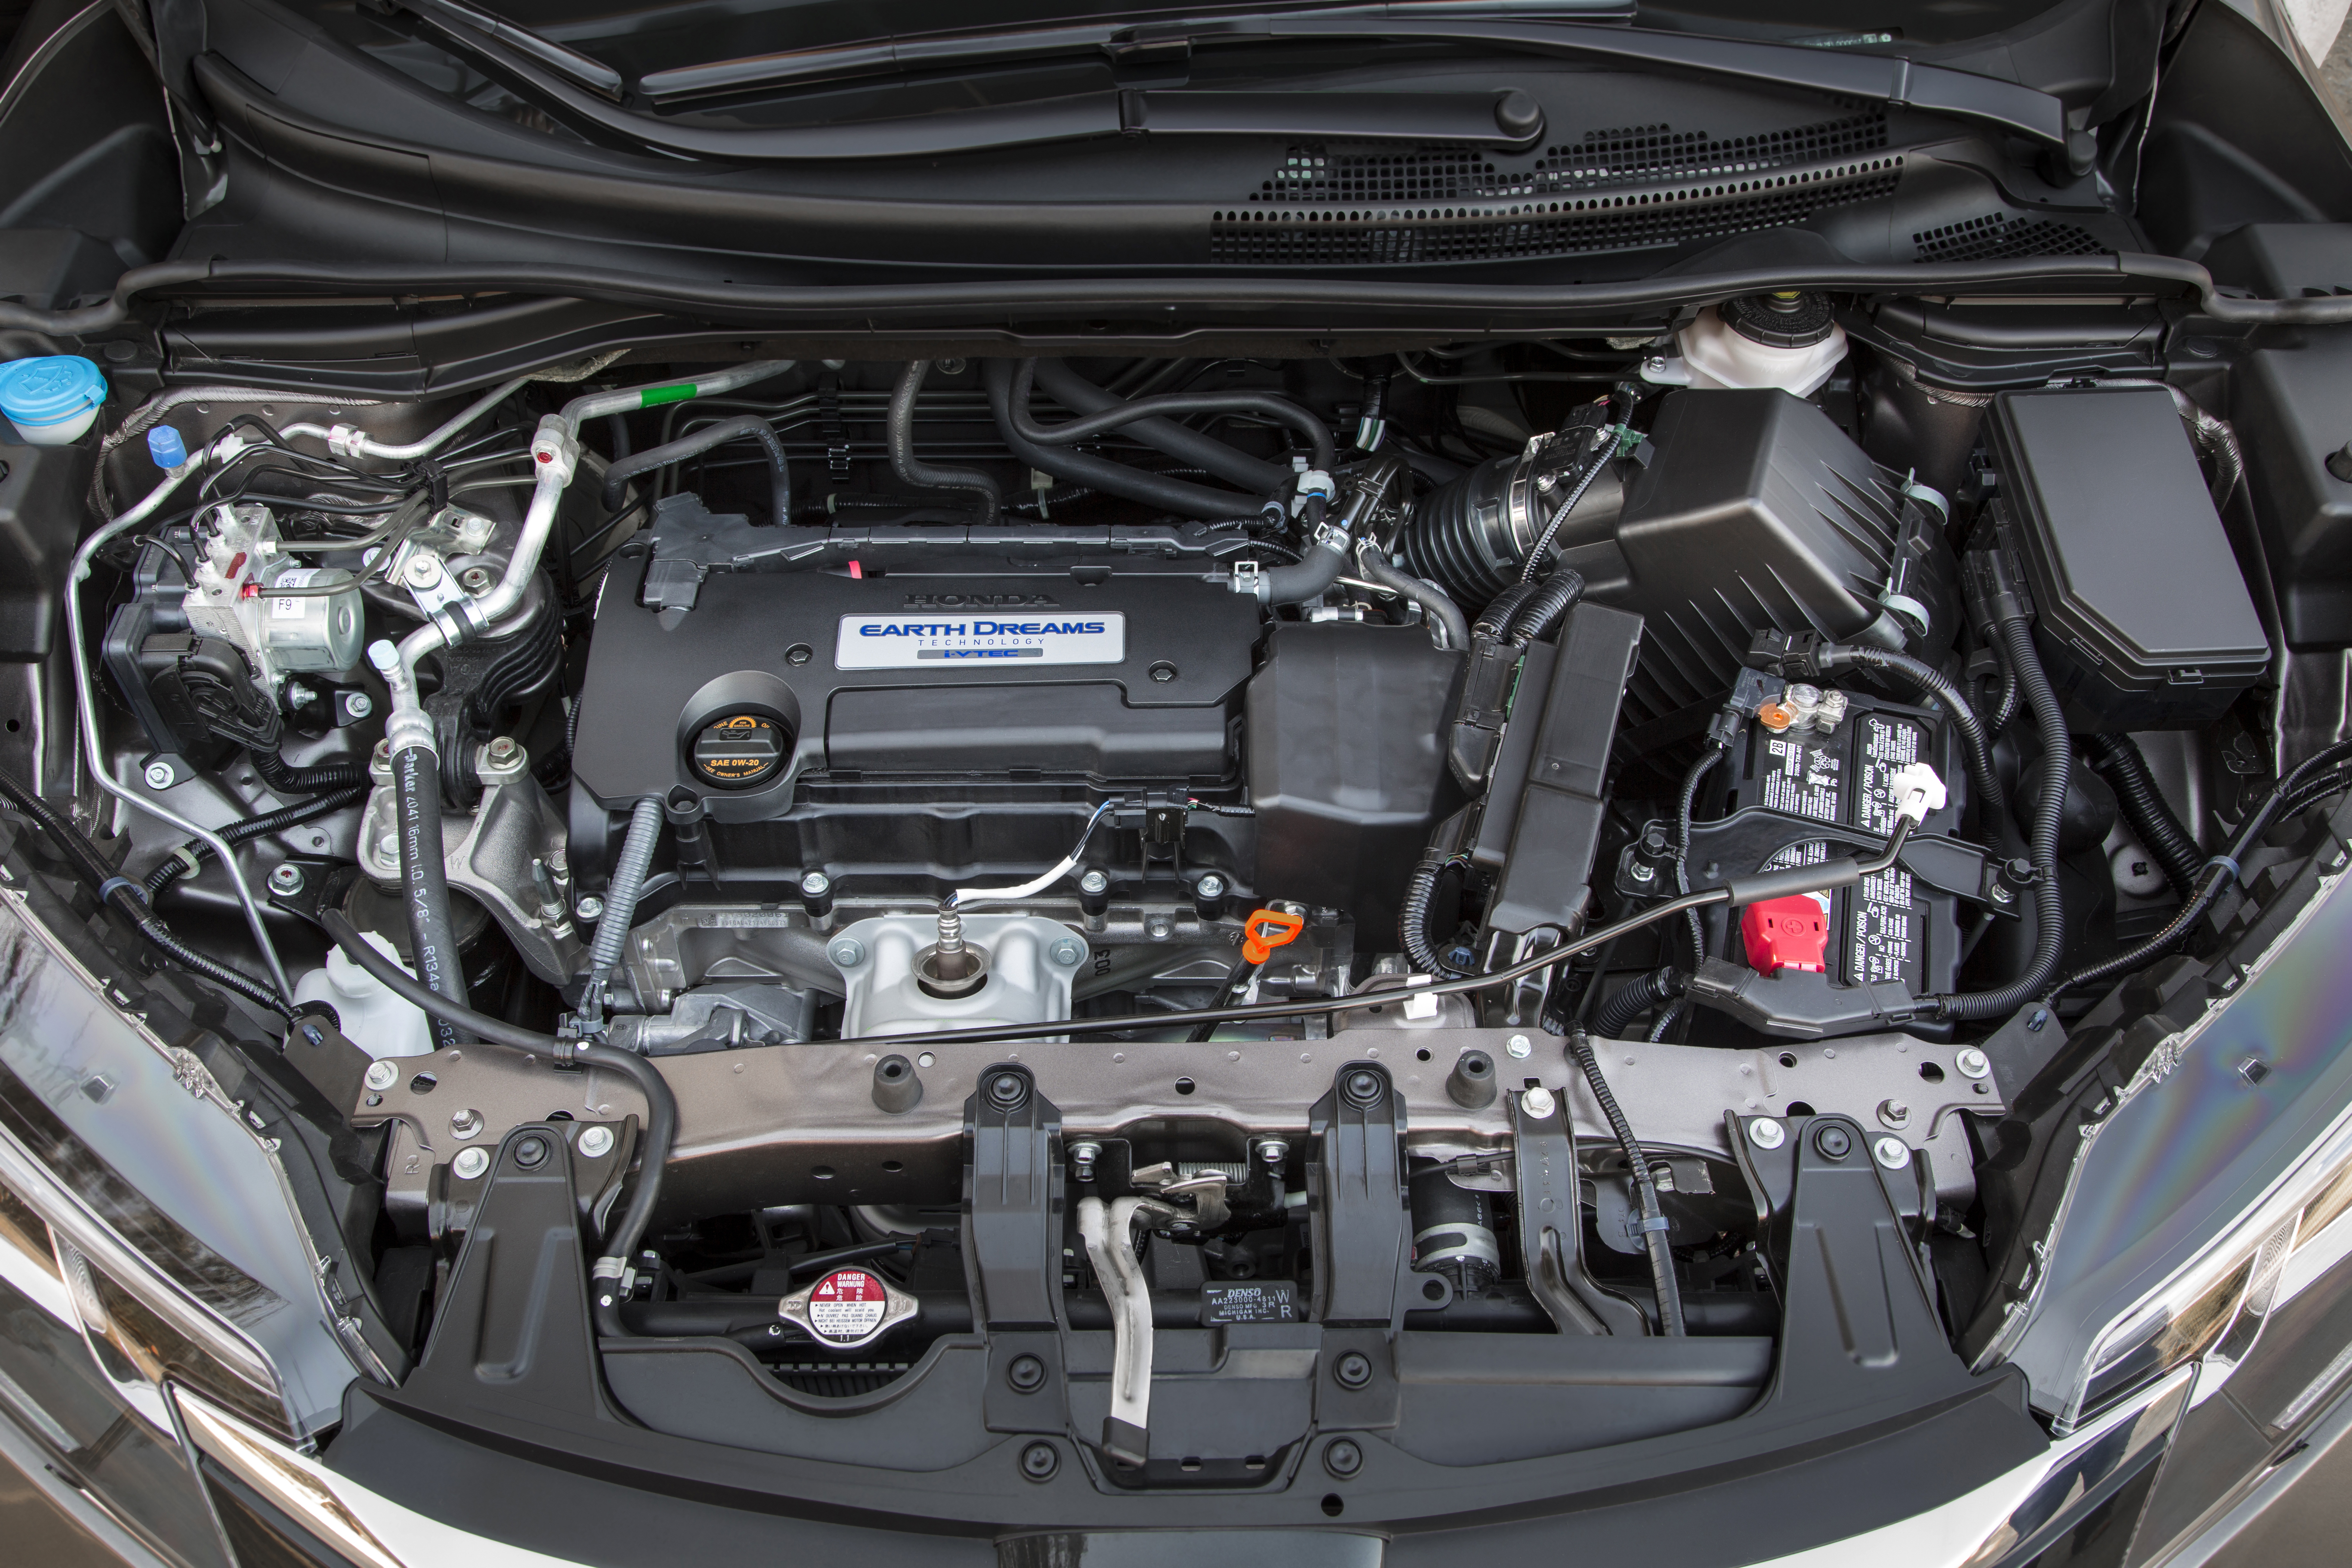 Honda cr капоты. Honda CR-V 2.4 под капотом. Что под капотом Хонда СРВ 2.4. Хонда СРВ 4 поколения мотор. Хонда CRV 2014 под капотом.